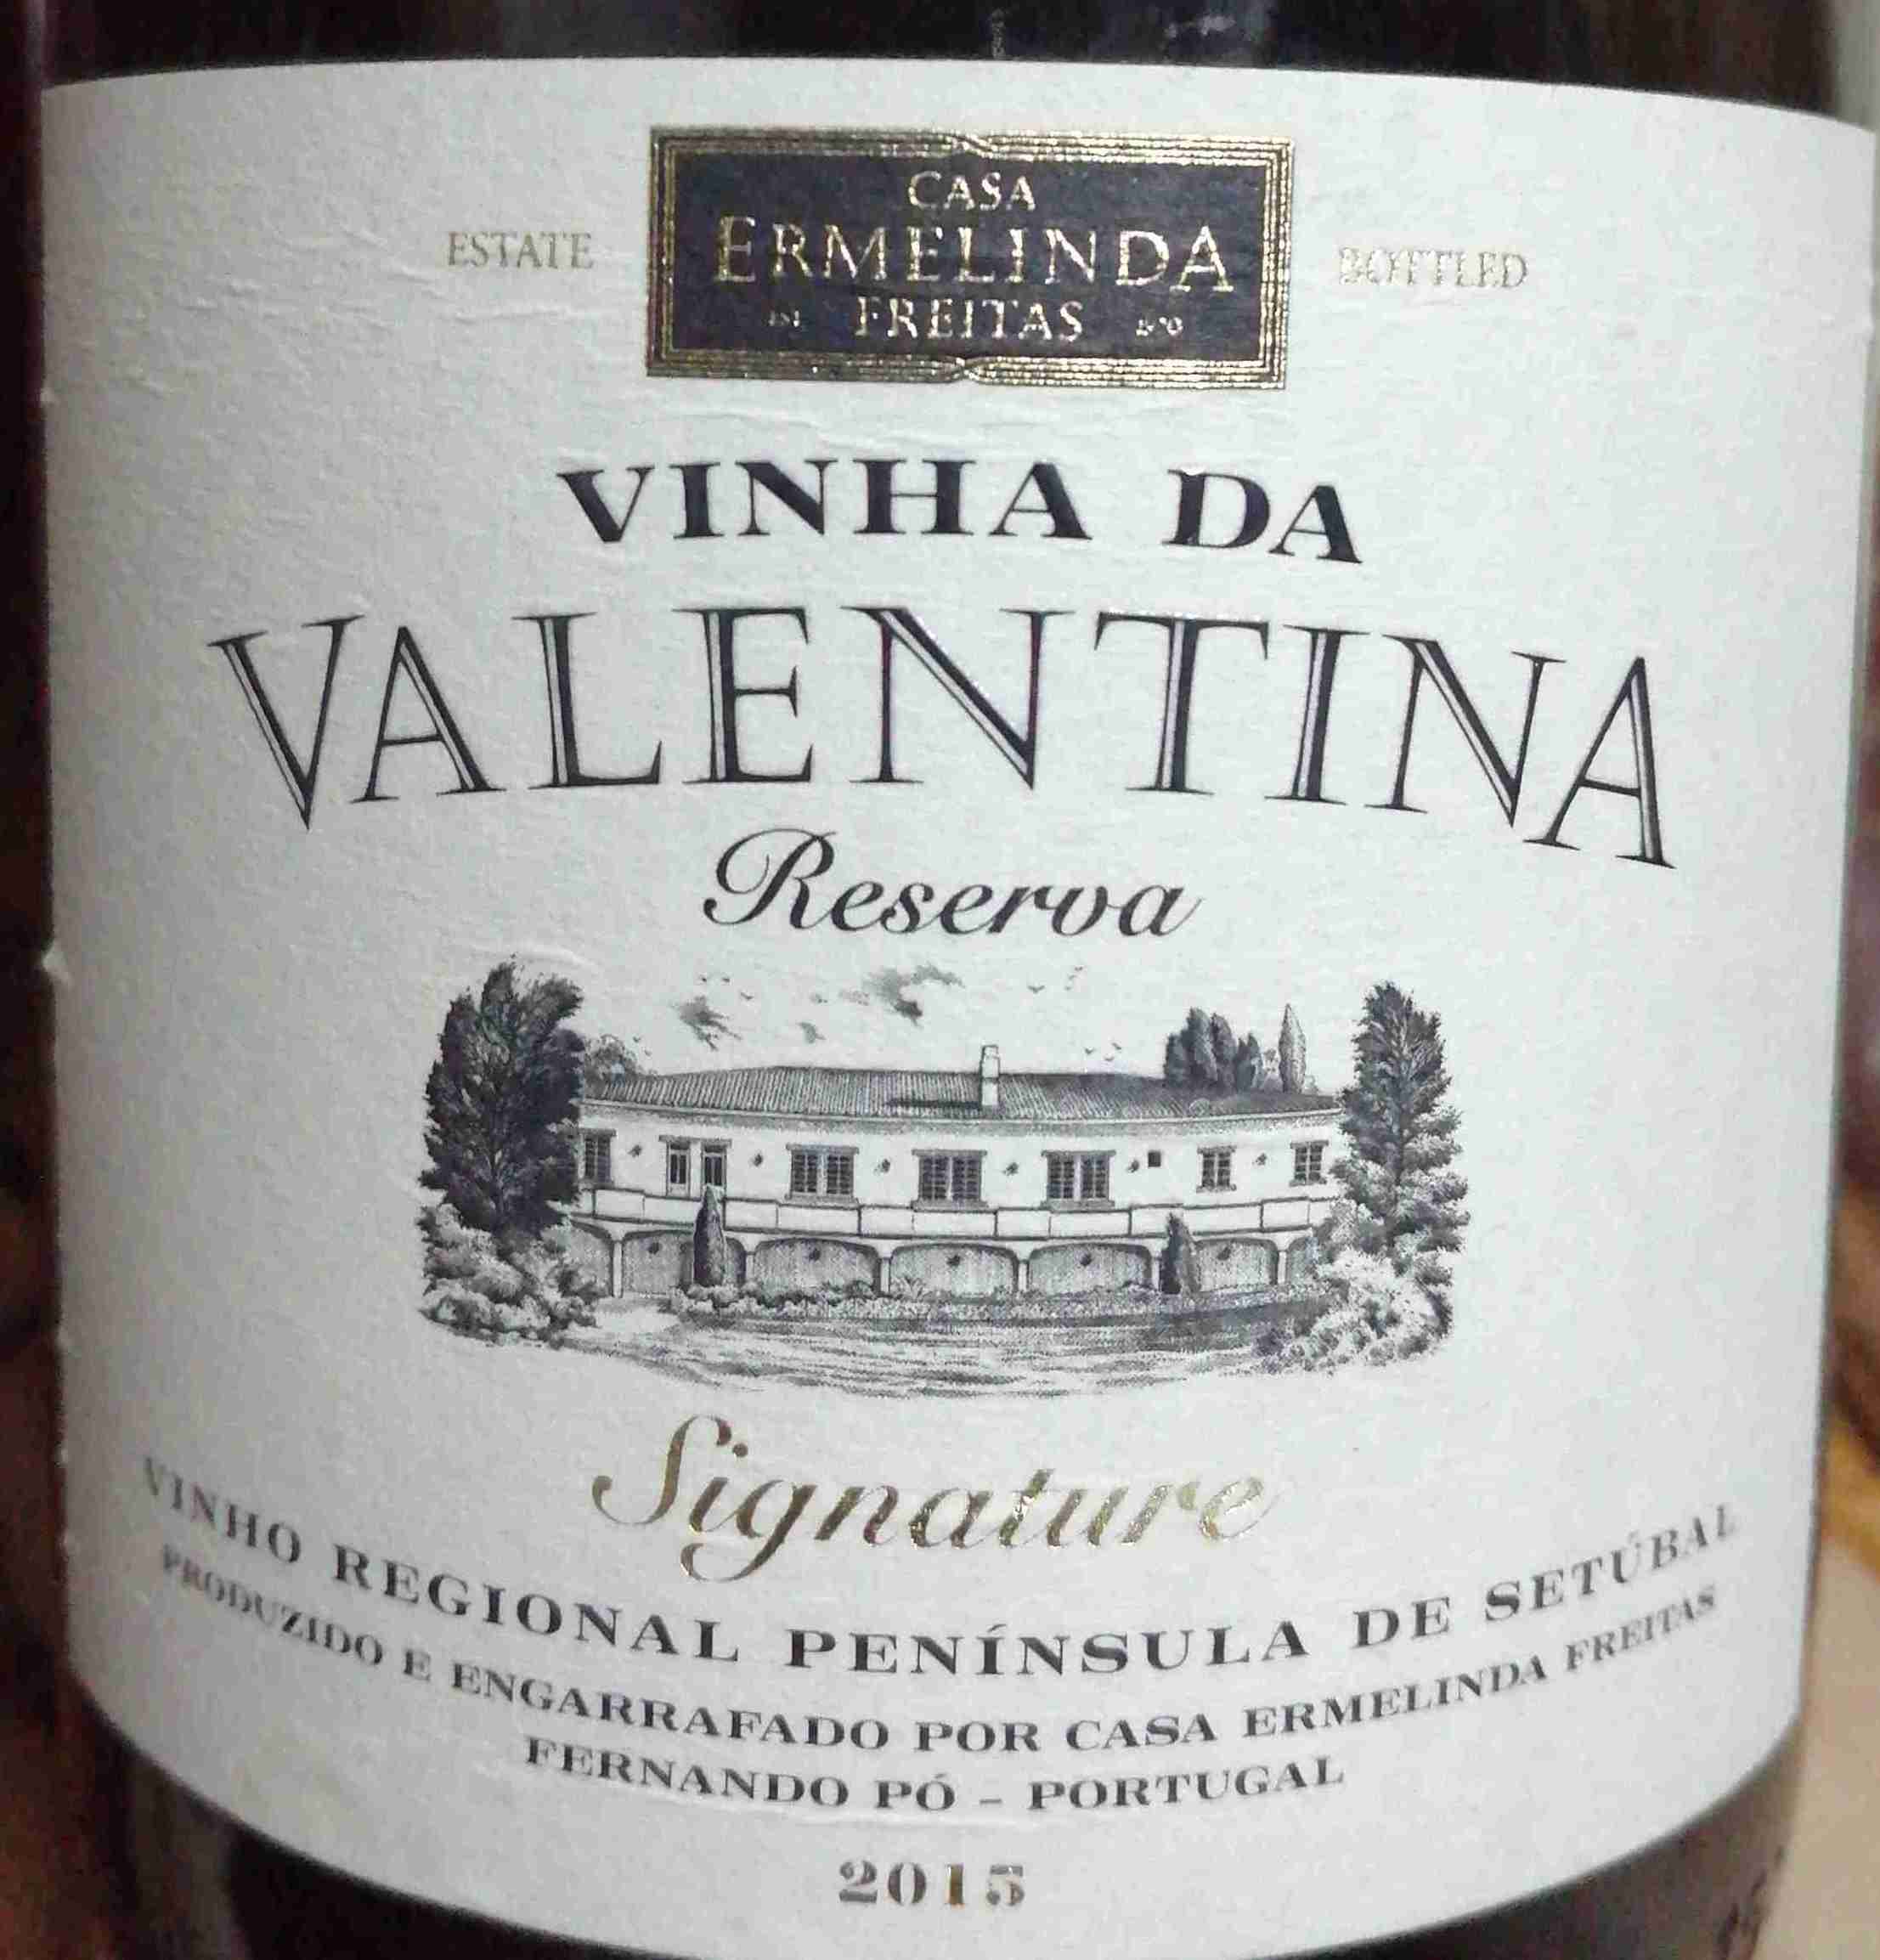 Casa Ermelinda Reserva Portugal-埃尔梅琳达·弗雷塔斯之家酒庄葡萄酒-价格-评价-中文名-红酒世界网 Signature Freitas Valentina da de Setubal, Vinha Peninsula Tinto